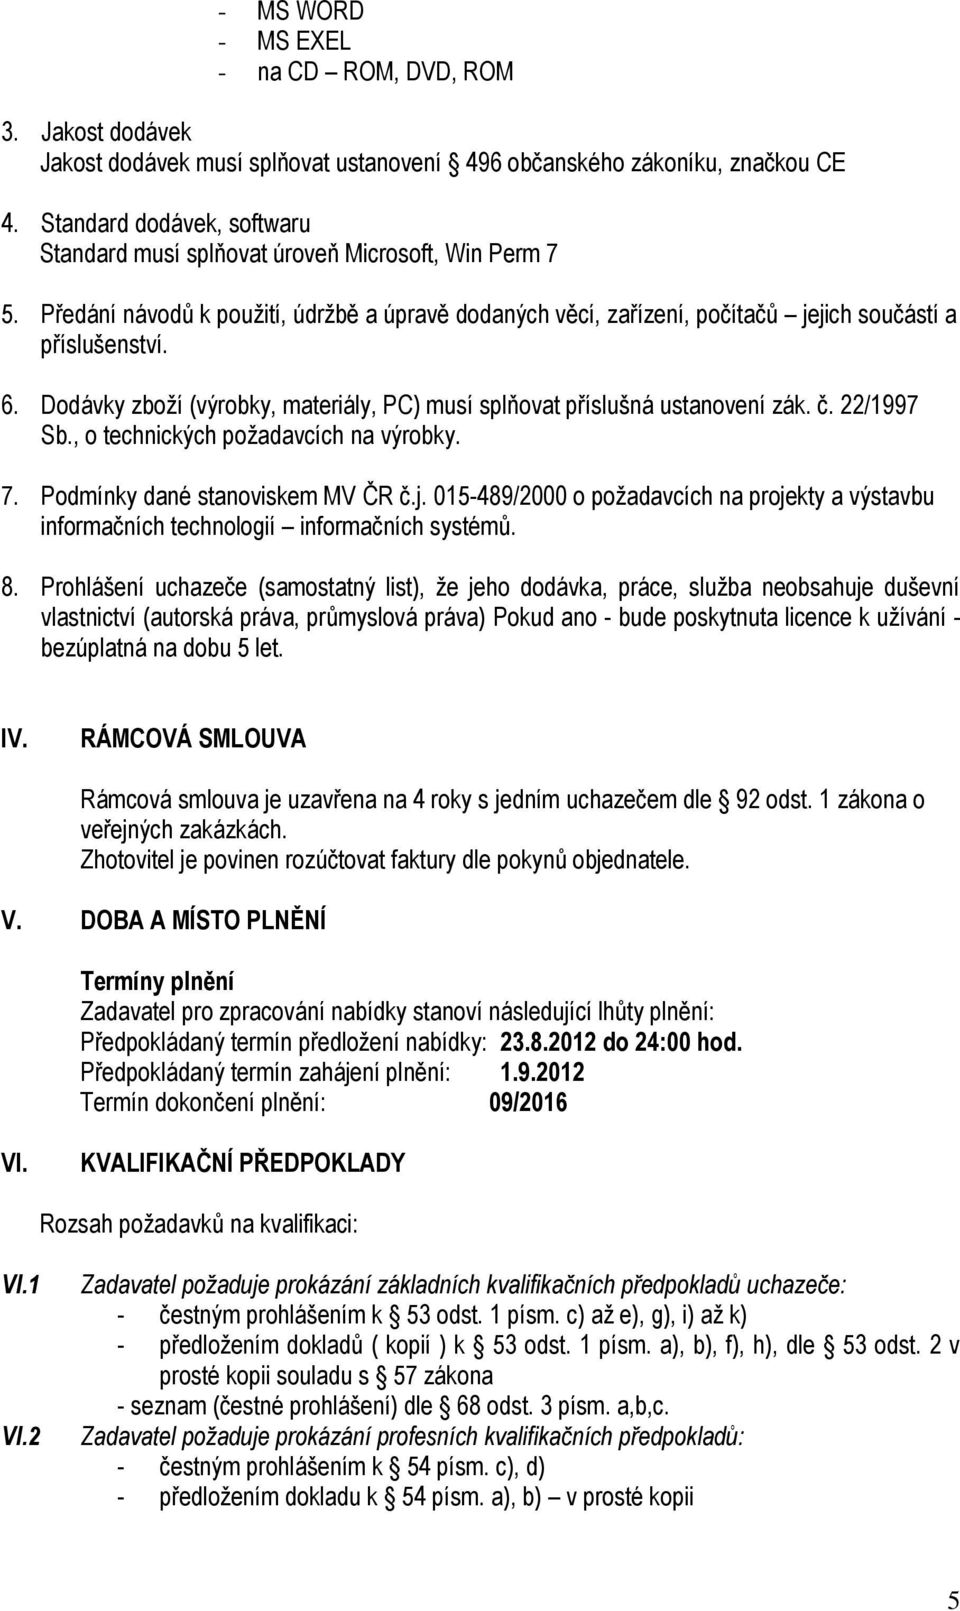 Dodávky zboží (výrobky, materiály, PC) musí splňovat příslušná ustanovení zák. č. 22/1997 Sb., o technických požadavcích na výrobky. 7. Podmínky dané stanoviskem MV ČR č.j.